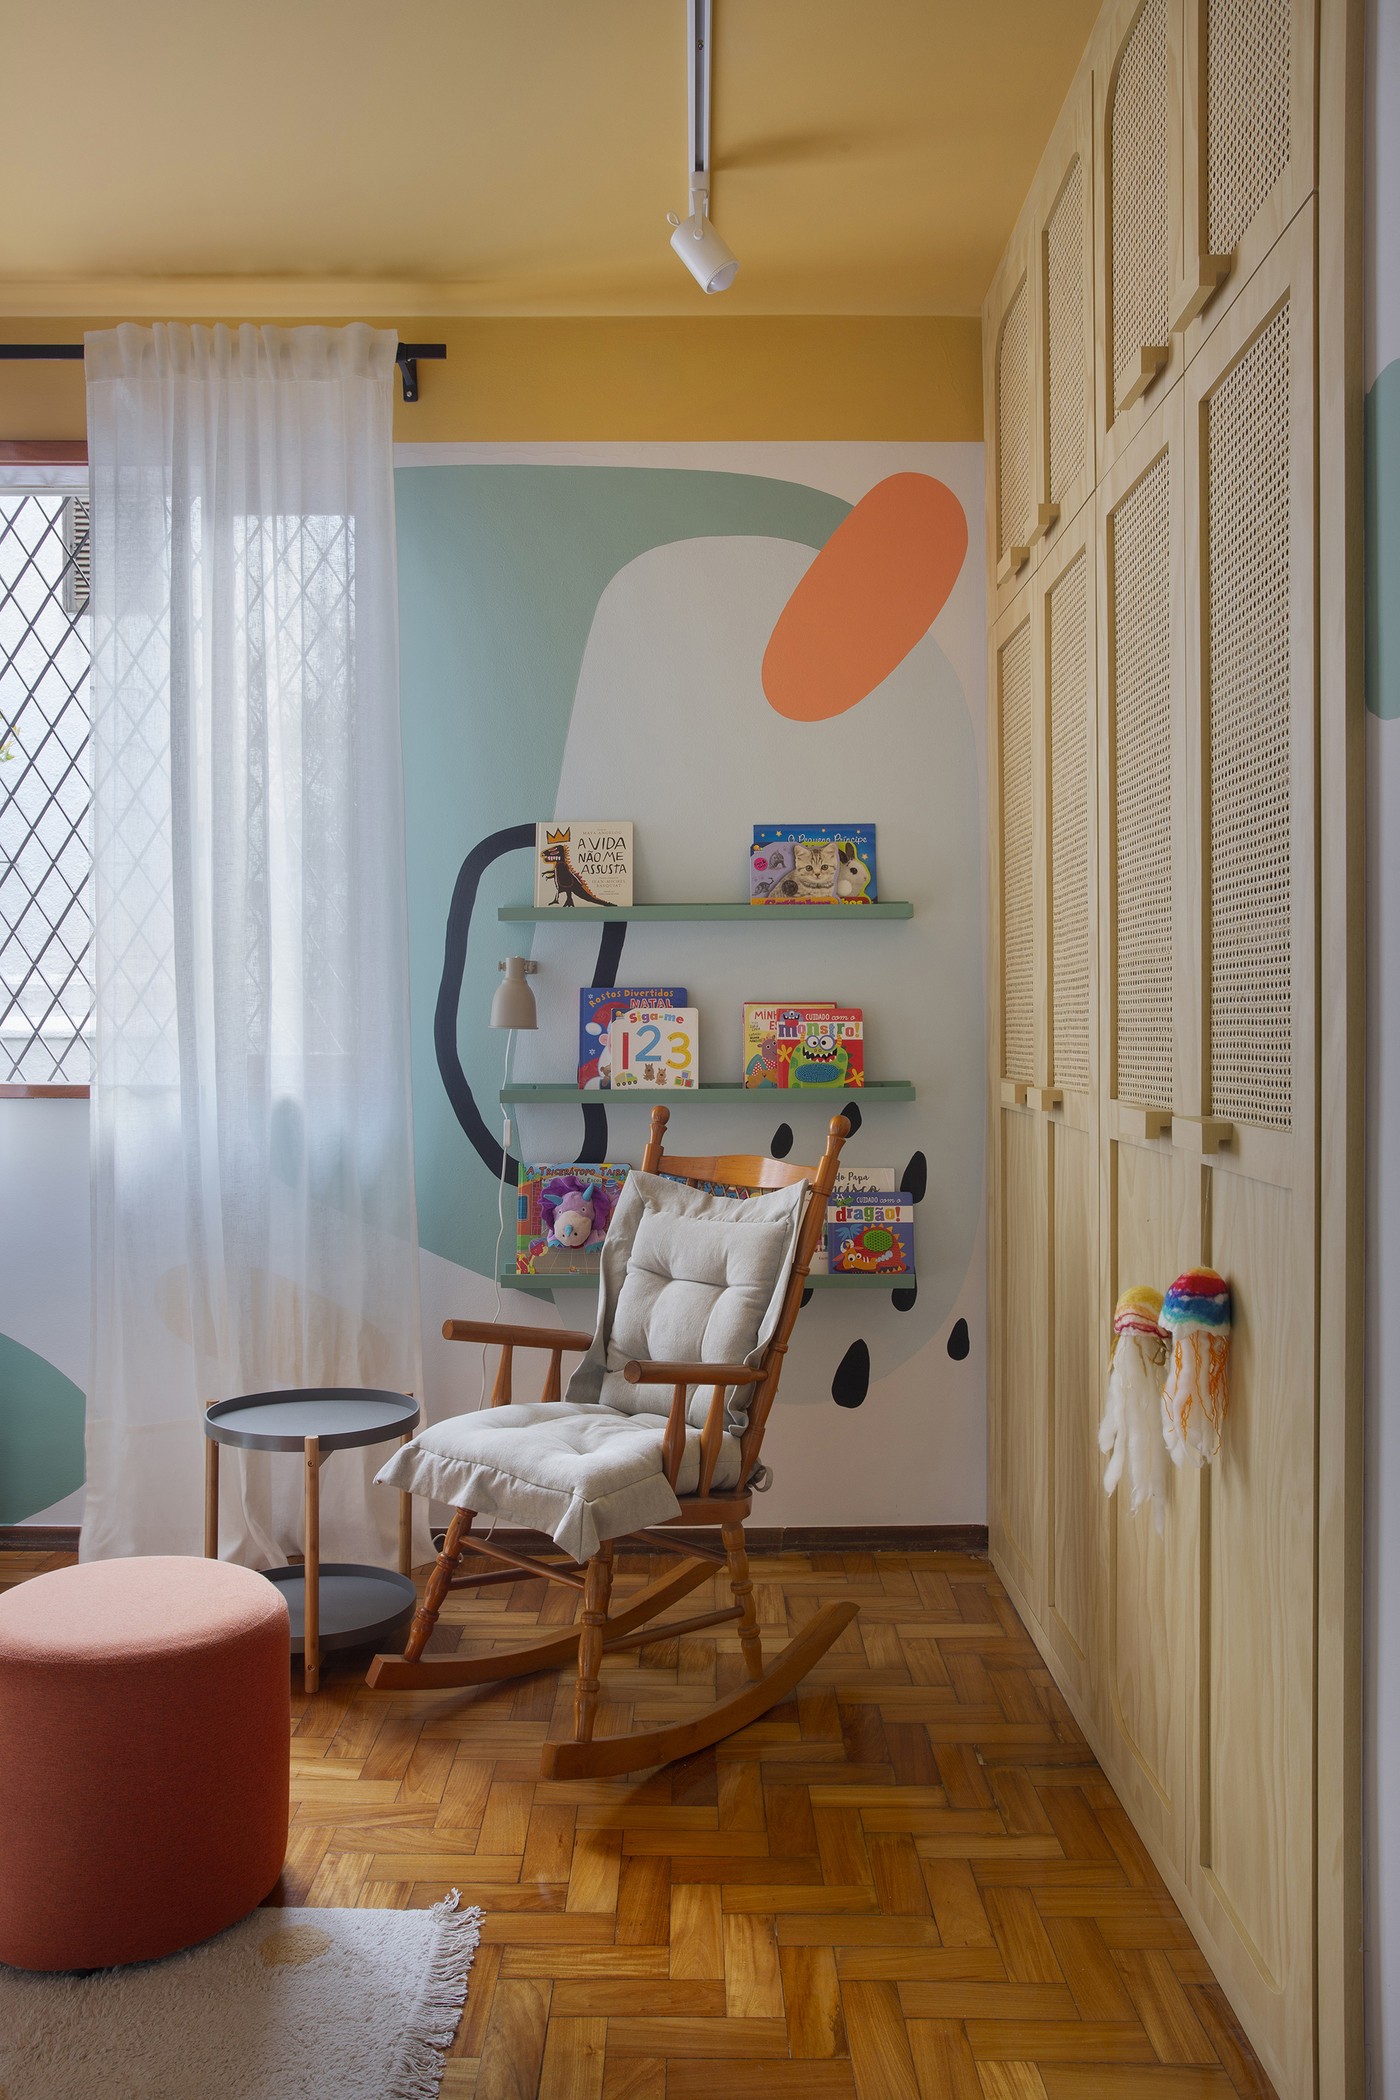 Décor do dia: quarto infantil com pintura orgânica e colorida (Foto: Juliano Colodeti/MCA Estúdio)